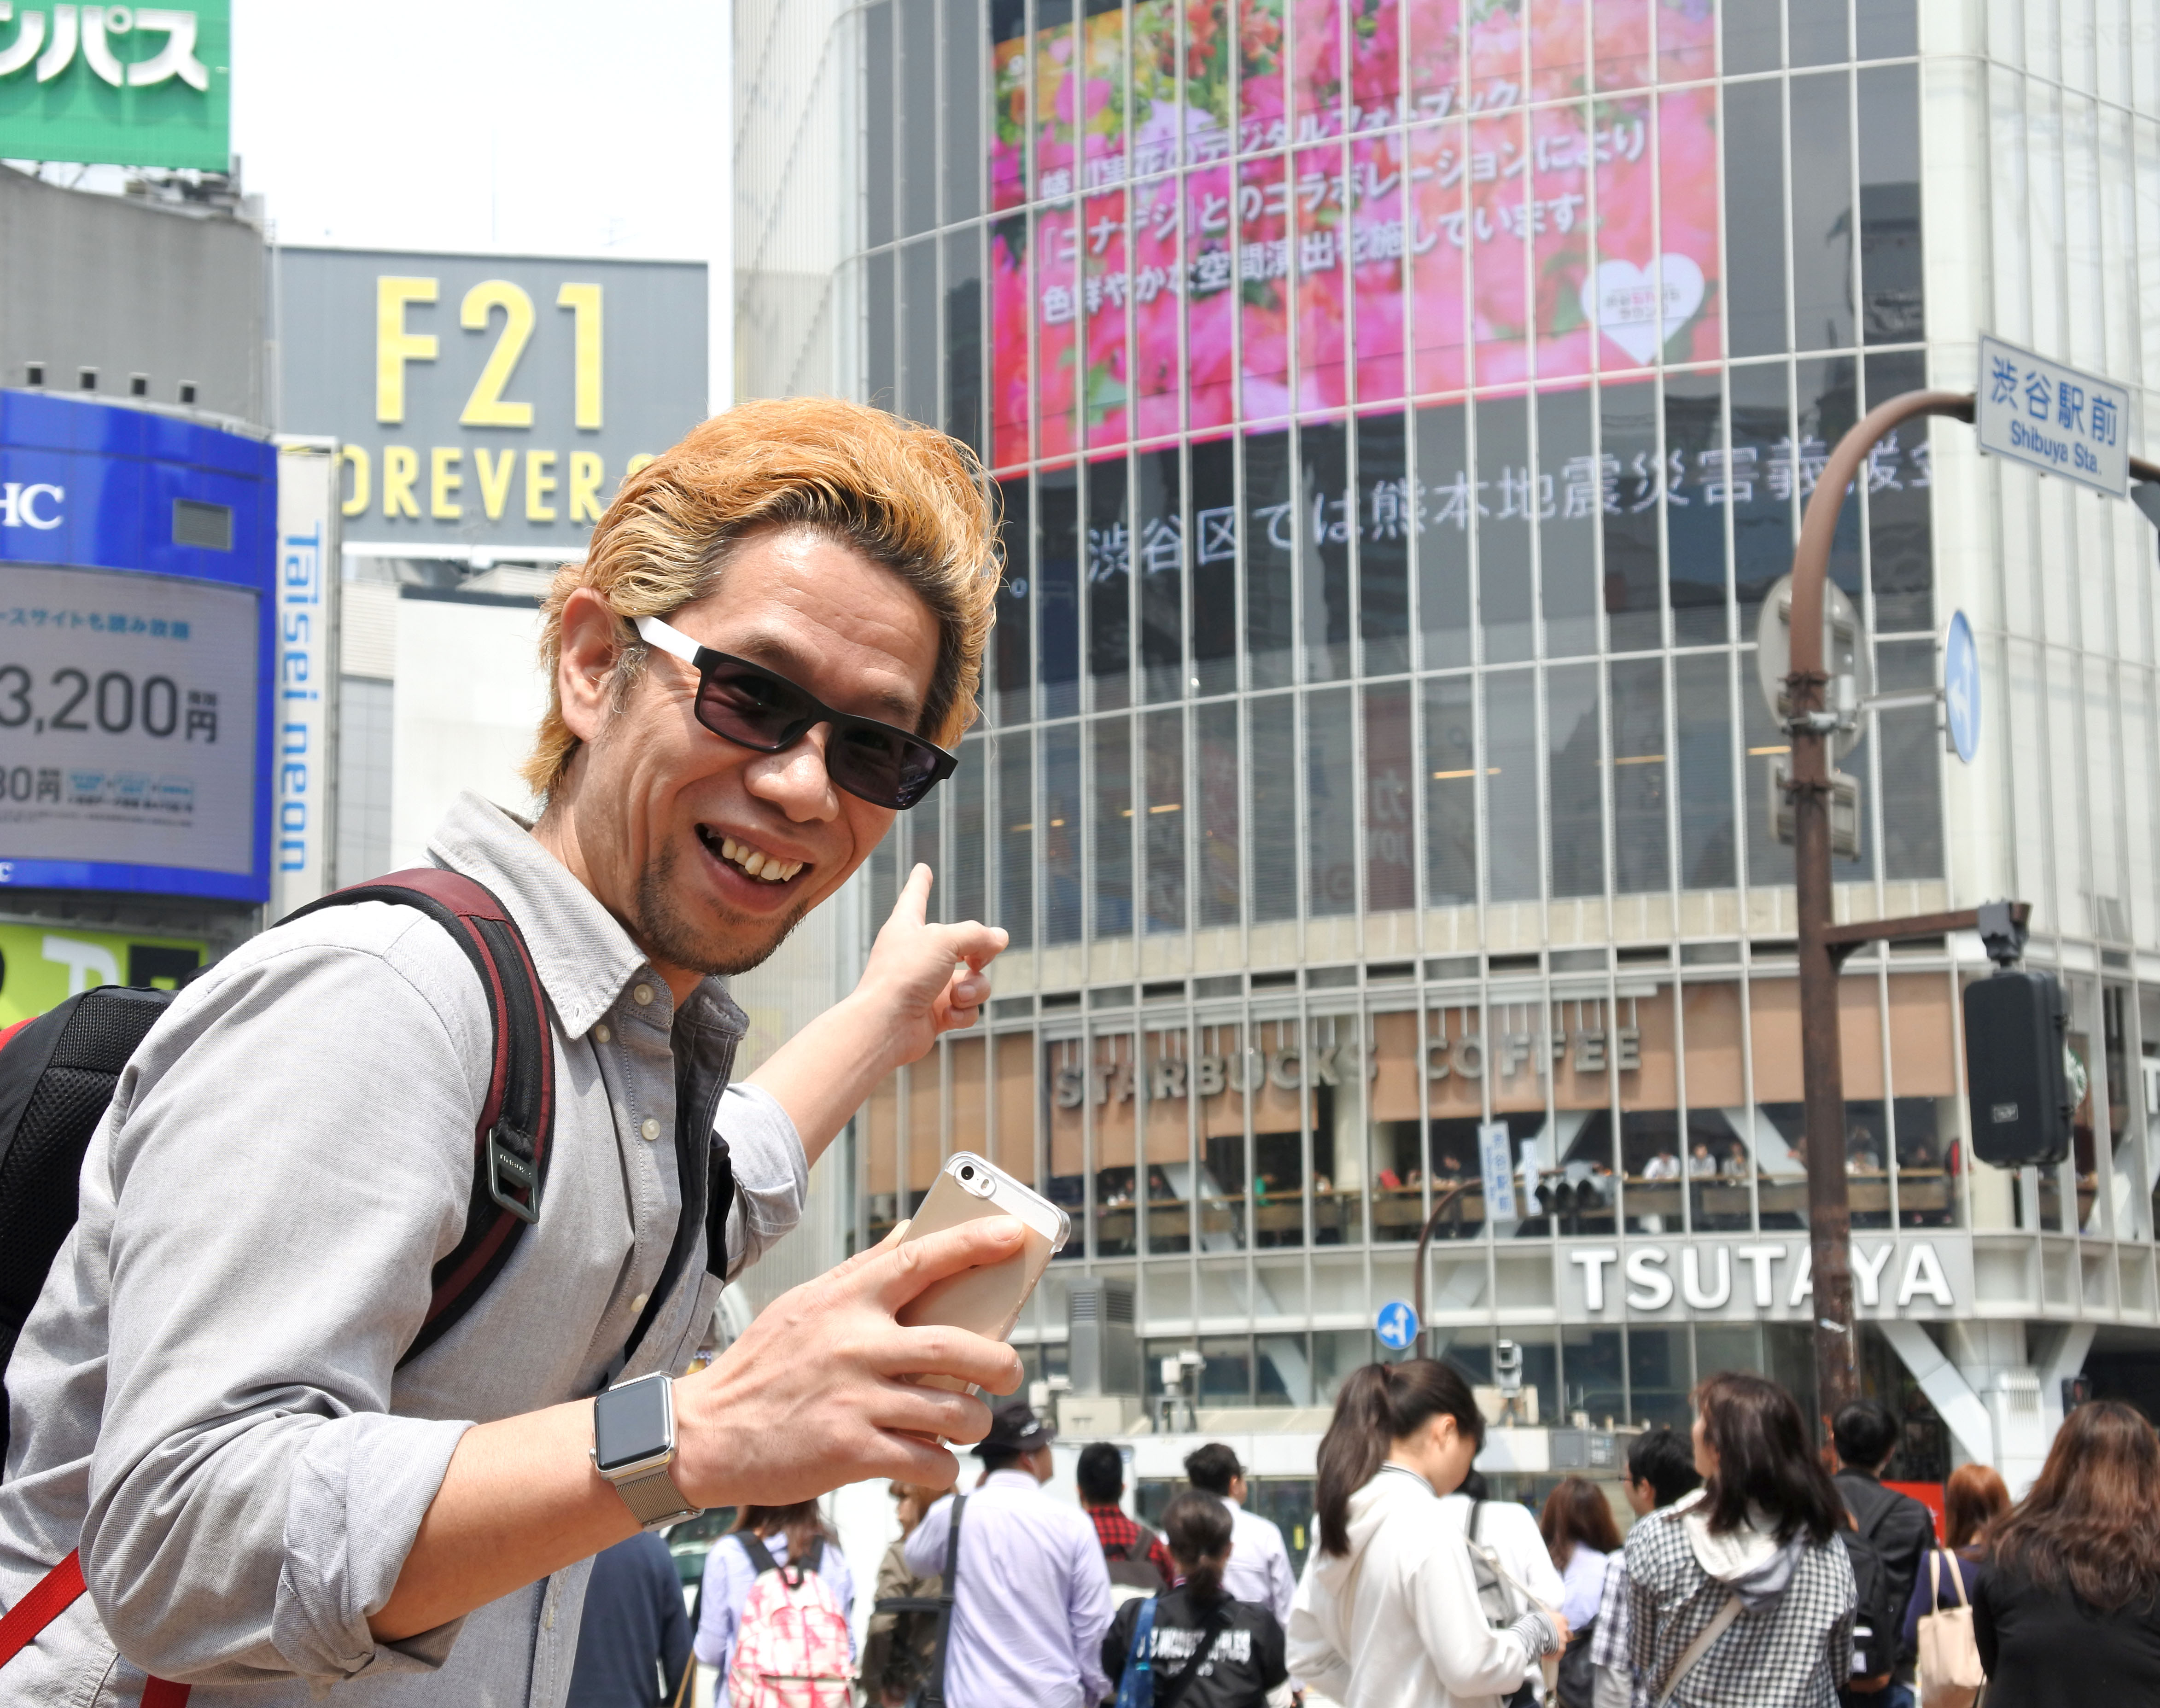 ゲームとリアルが合体 One Piece トレジャークルーズ のシリアルコードを渋谷の街でゲットせよ 300万円相当純金製のカギが手に入るかも ロケットニュース24